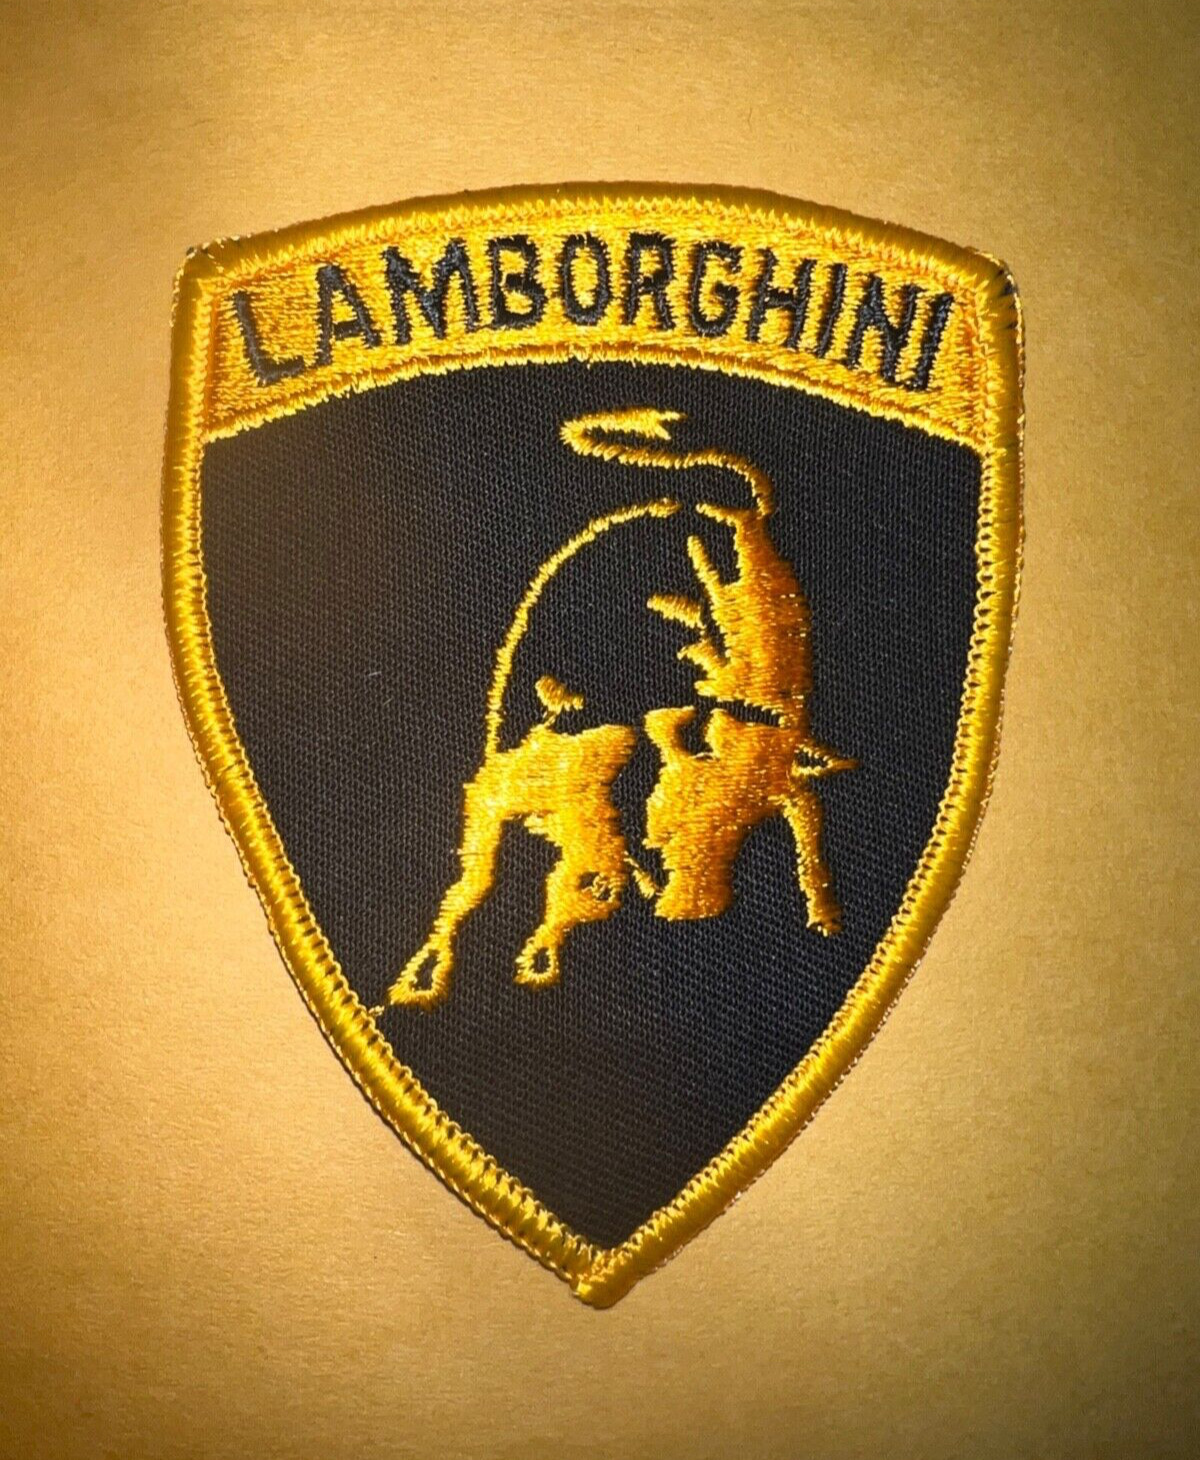 Vintage Lamborghini patch, Lamborghini patch, Lambo